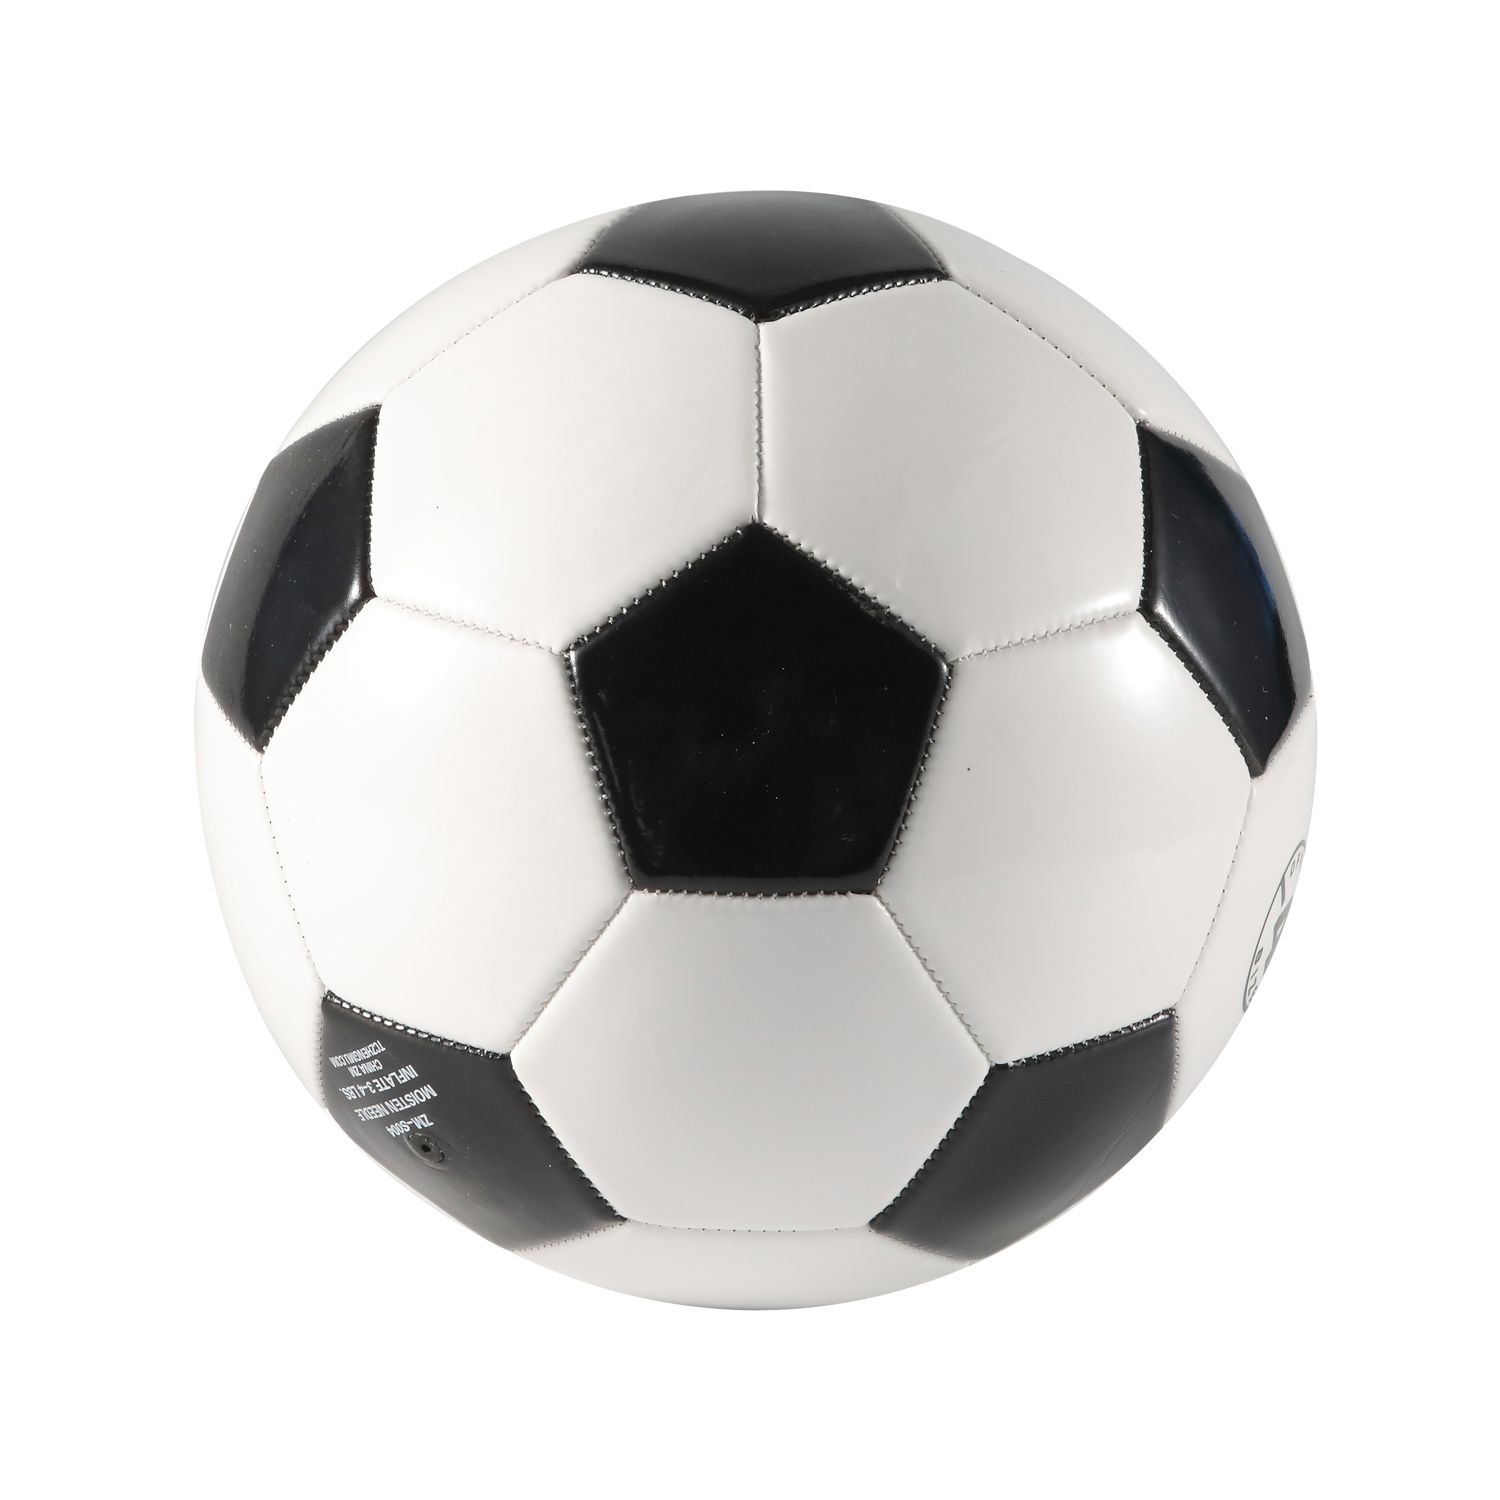 Ballon de football en cuir synthétique taille 5 officielle